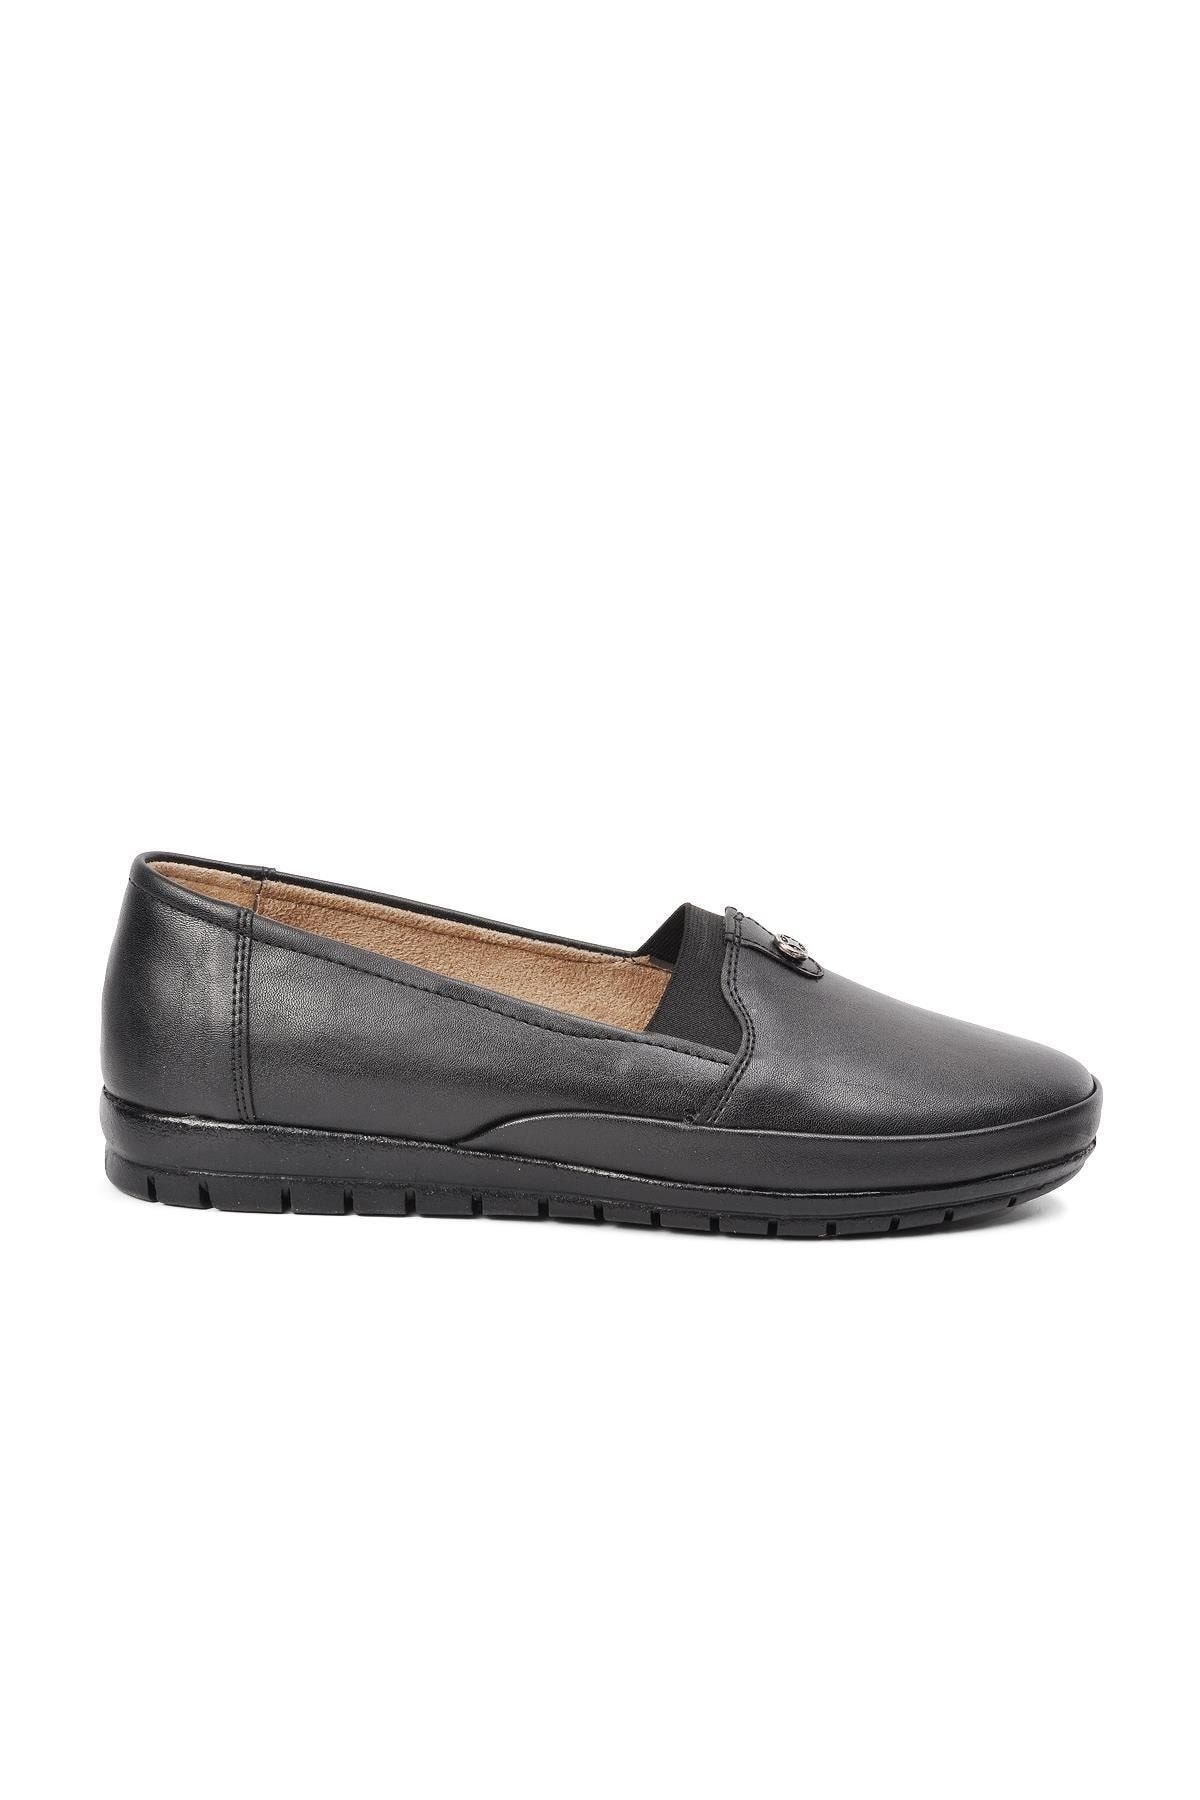 ESLEM M 141 Siyah Comfort Kadın Günlük Ayakkabı